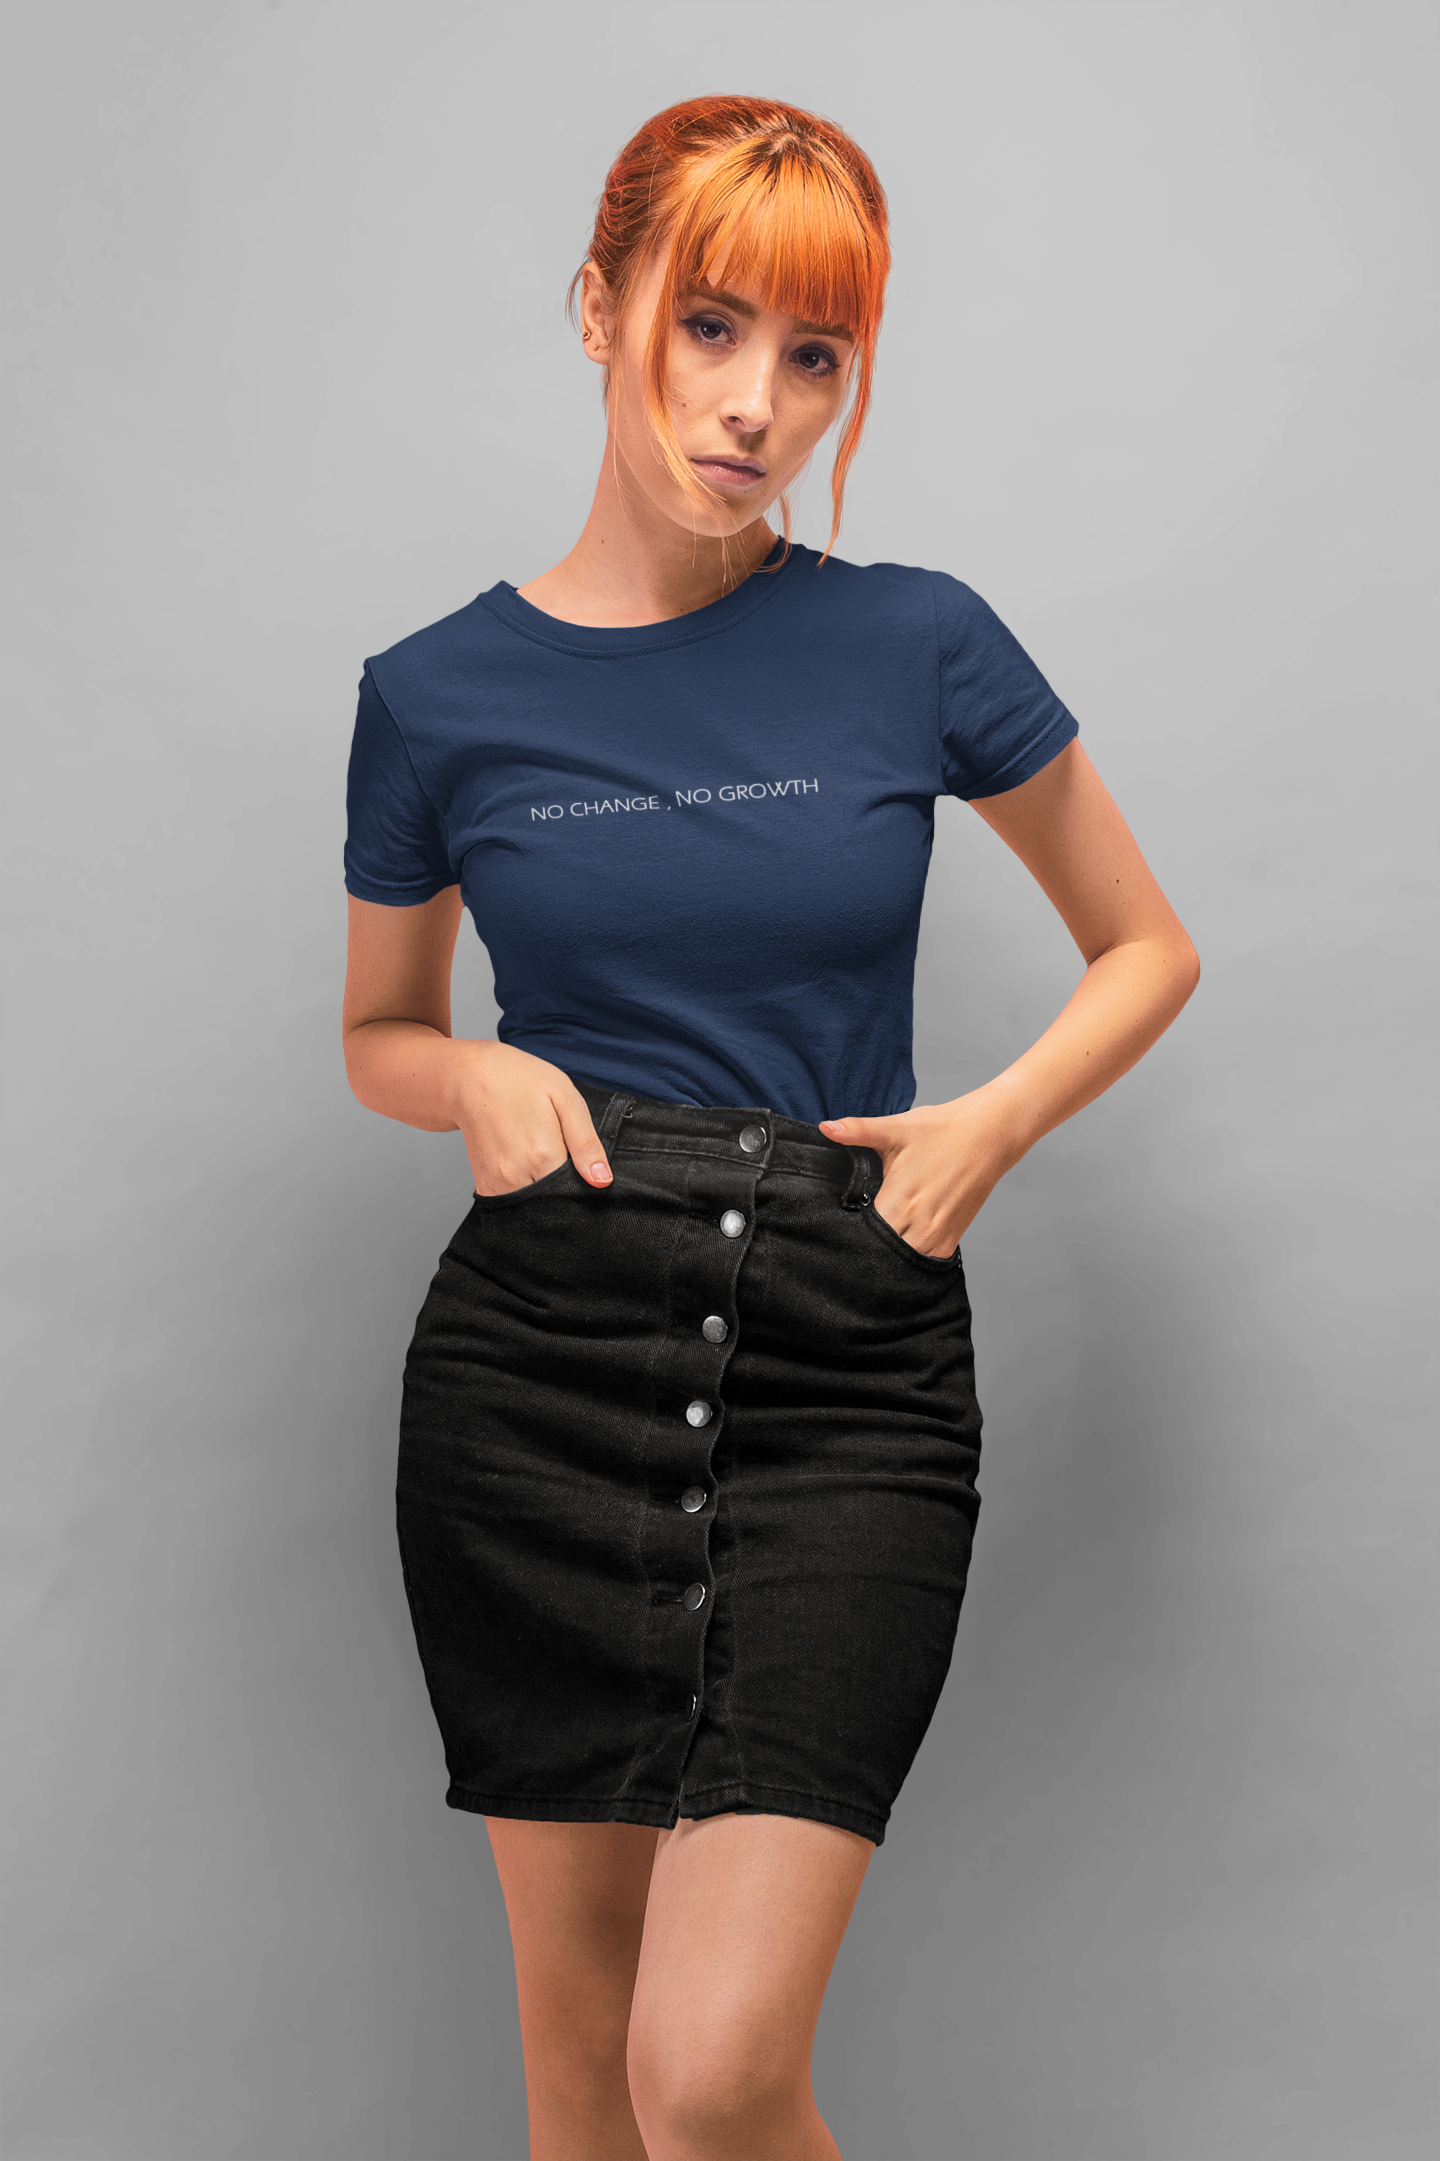 No Changes No Growth Minimal Women Half Sleeves T-shirt- FunkyTeesClub